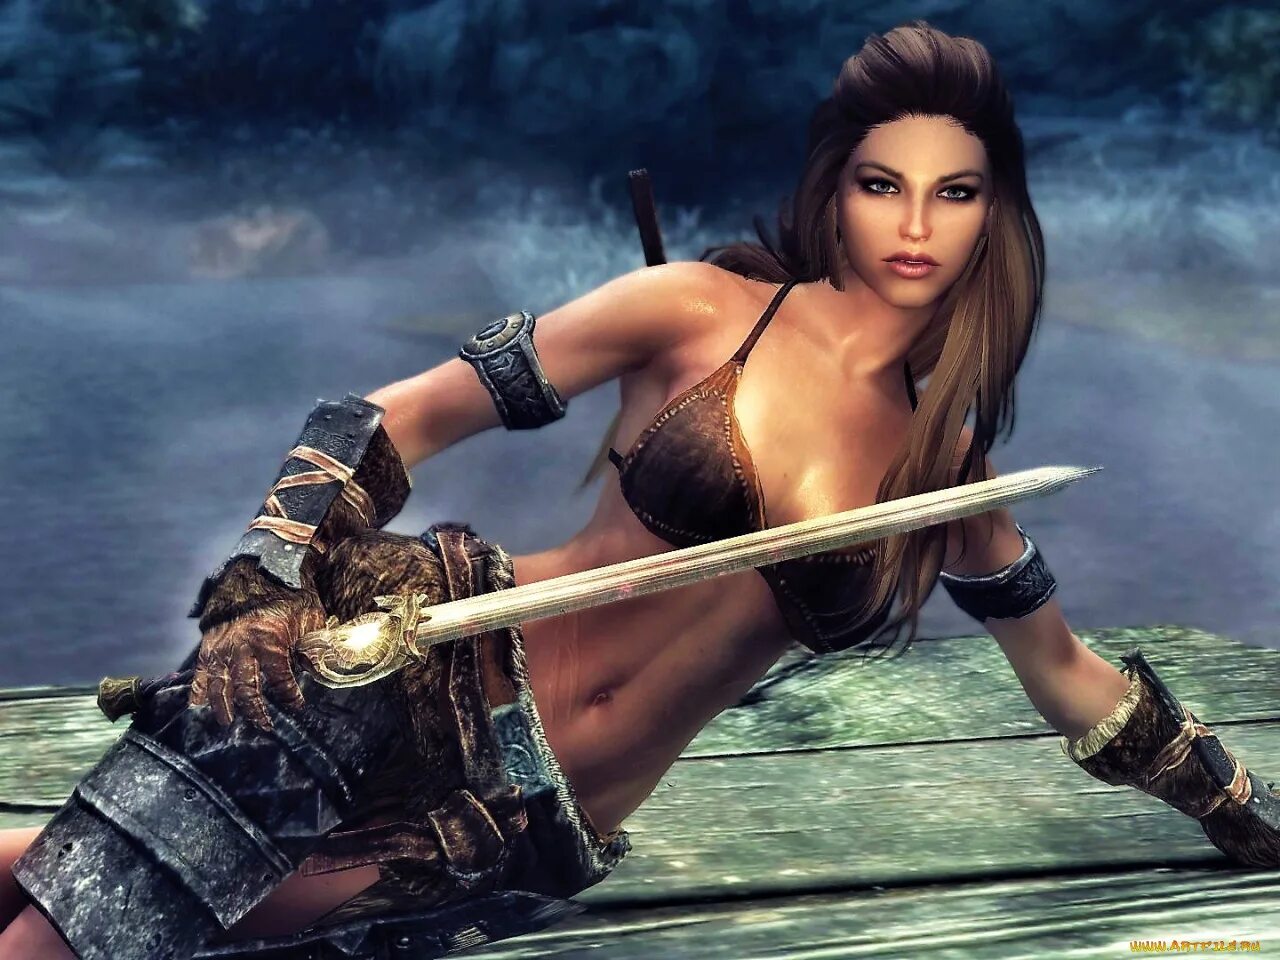 Говорящая девушка игра. Elder Scrolls 5: Skyrim "спутница Рин". Скайрим девушки. Игры с красивыми женскими персонажами. Красивые девушки из Скайрима.